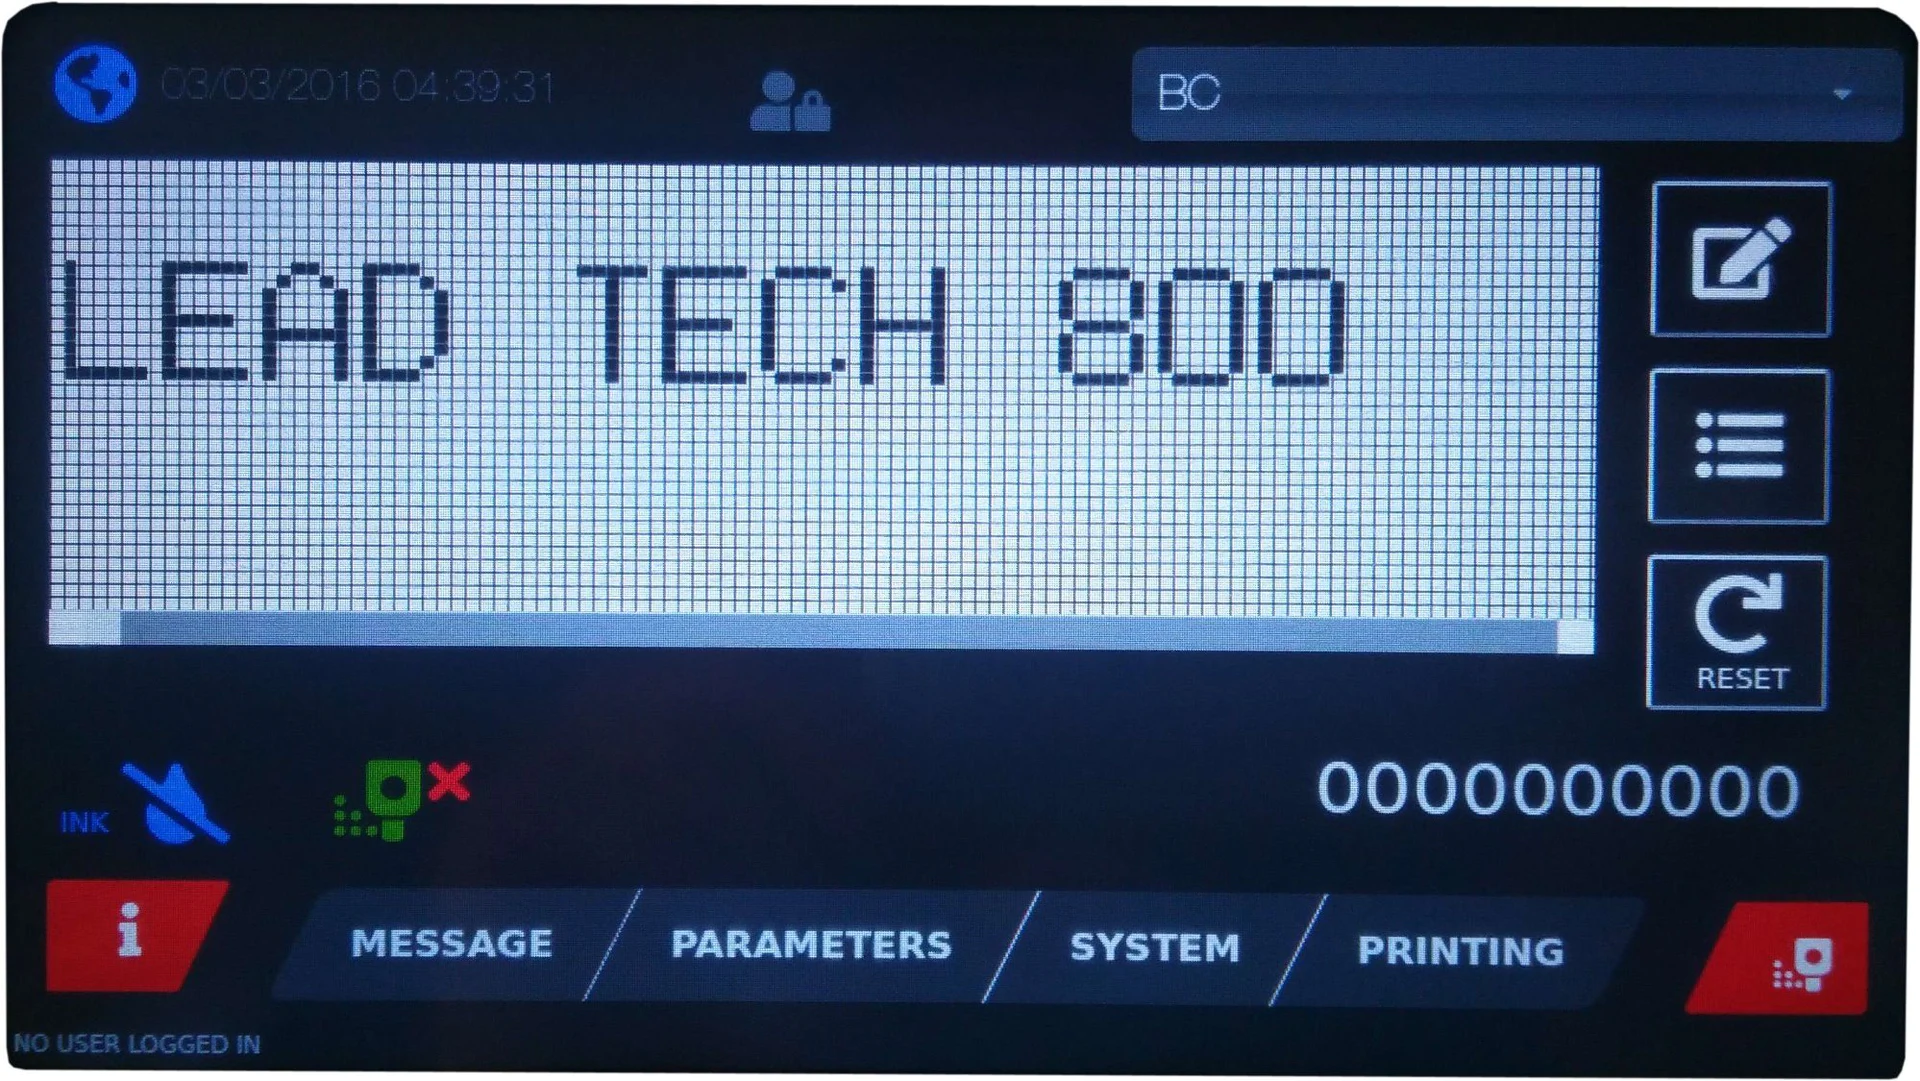 Lead Tech Lt800 Dole Can Coding Cij Inkjet Printer